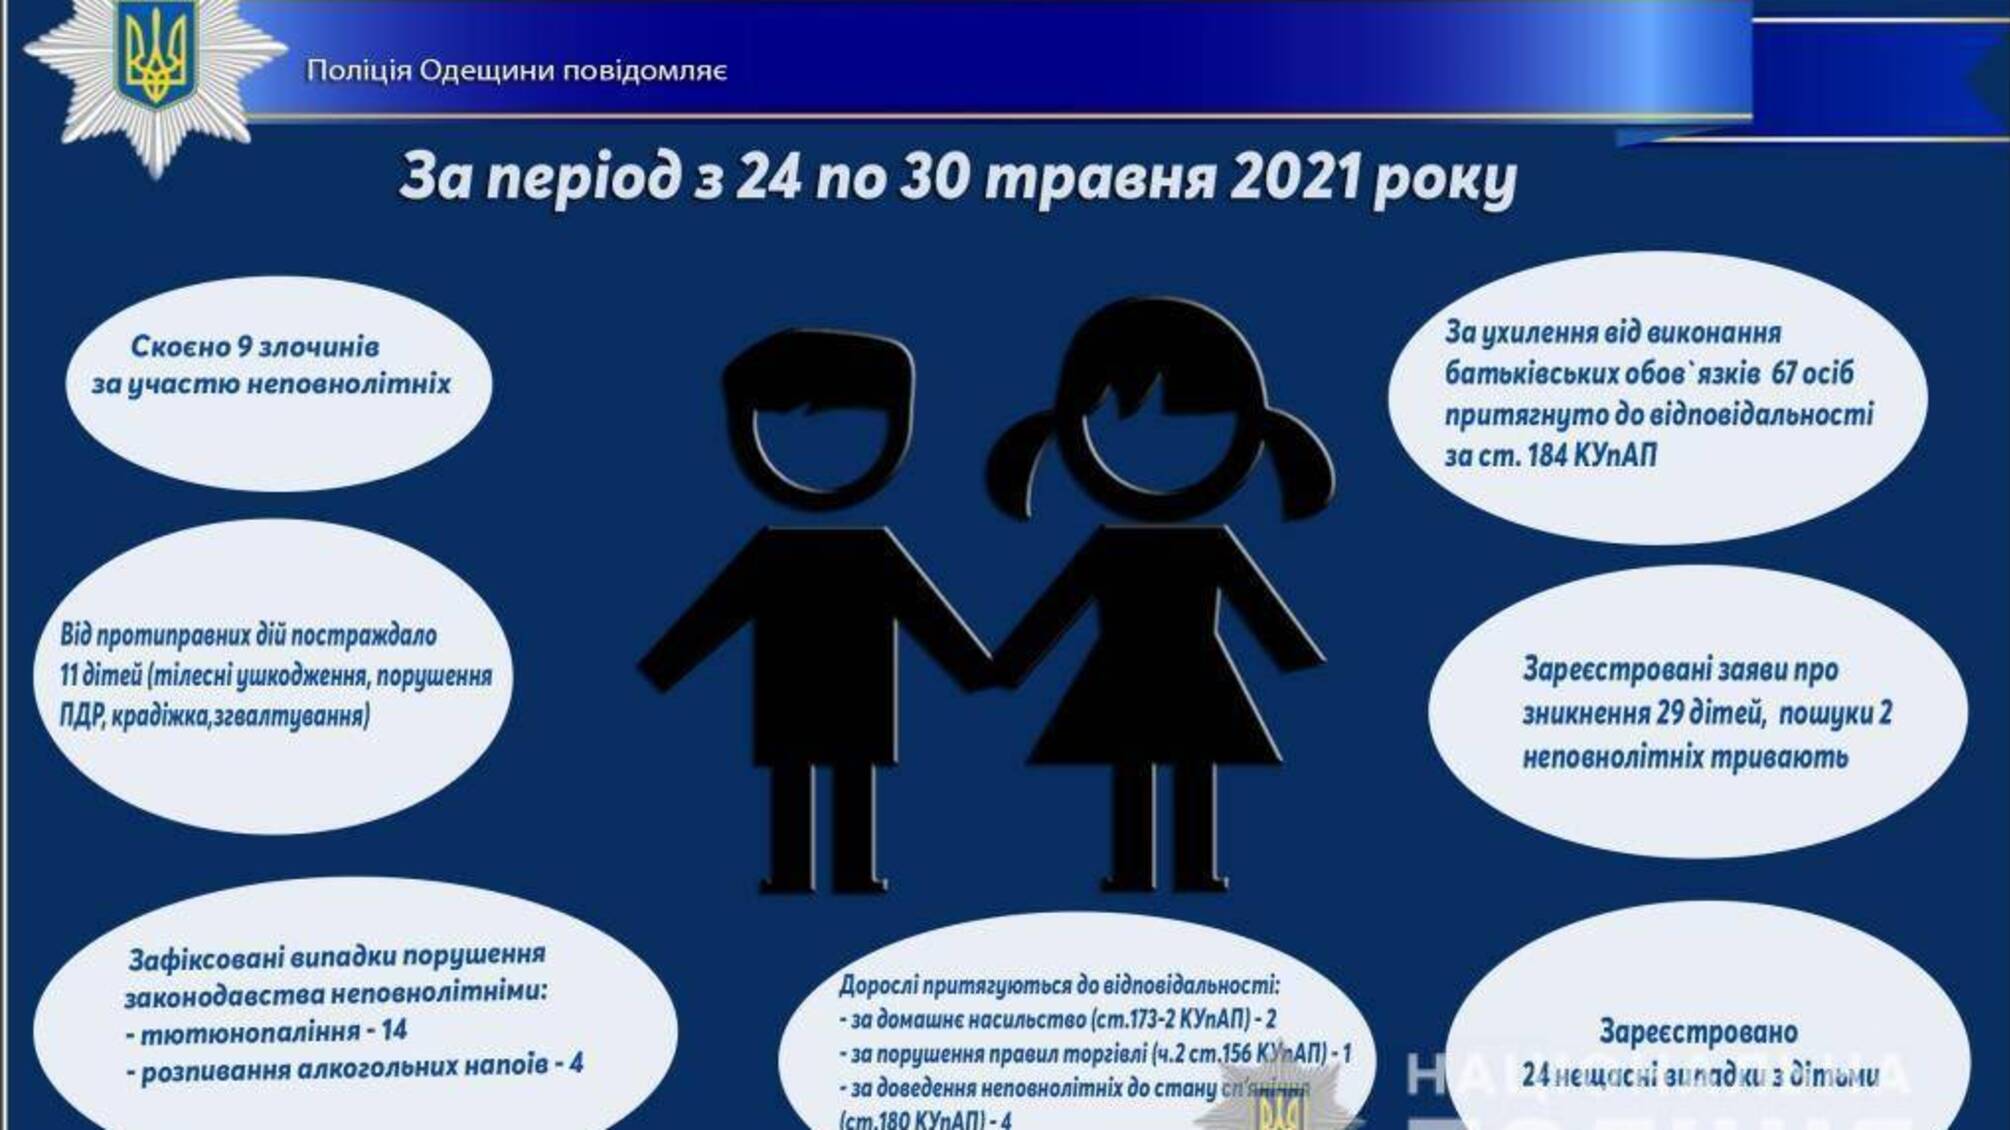 Про стан роботи поліції Одещини з протидії порушенням законодавства неповнолітніми та відносно них за період з 24 по 30 травня 2021 року